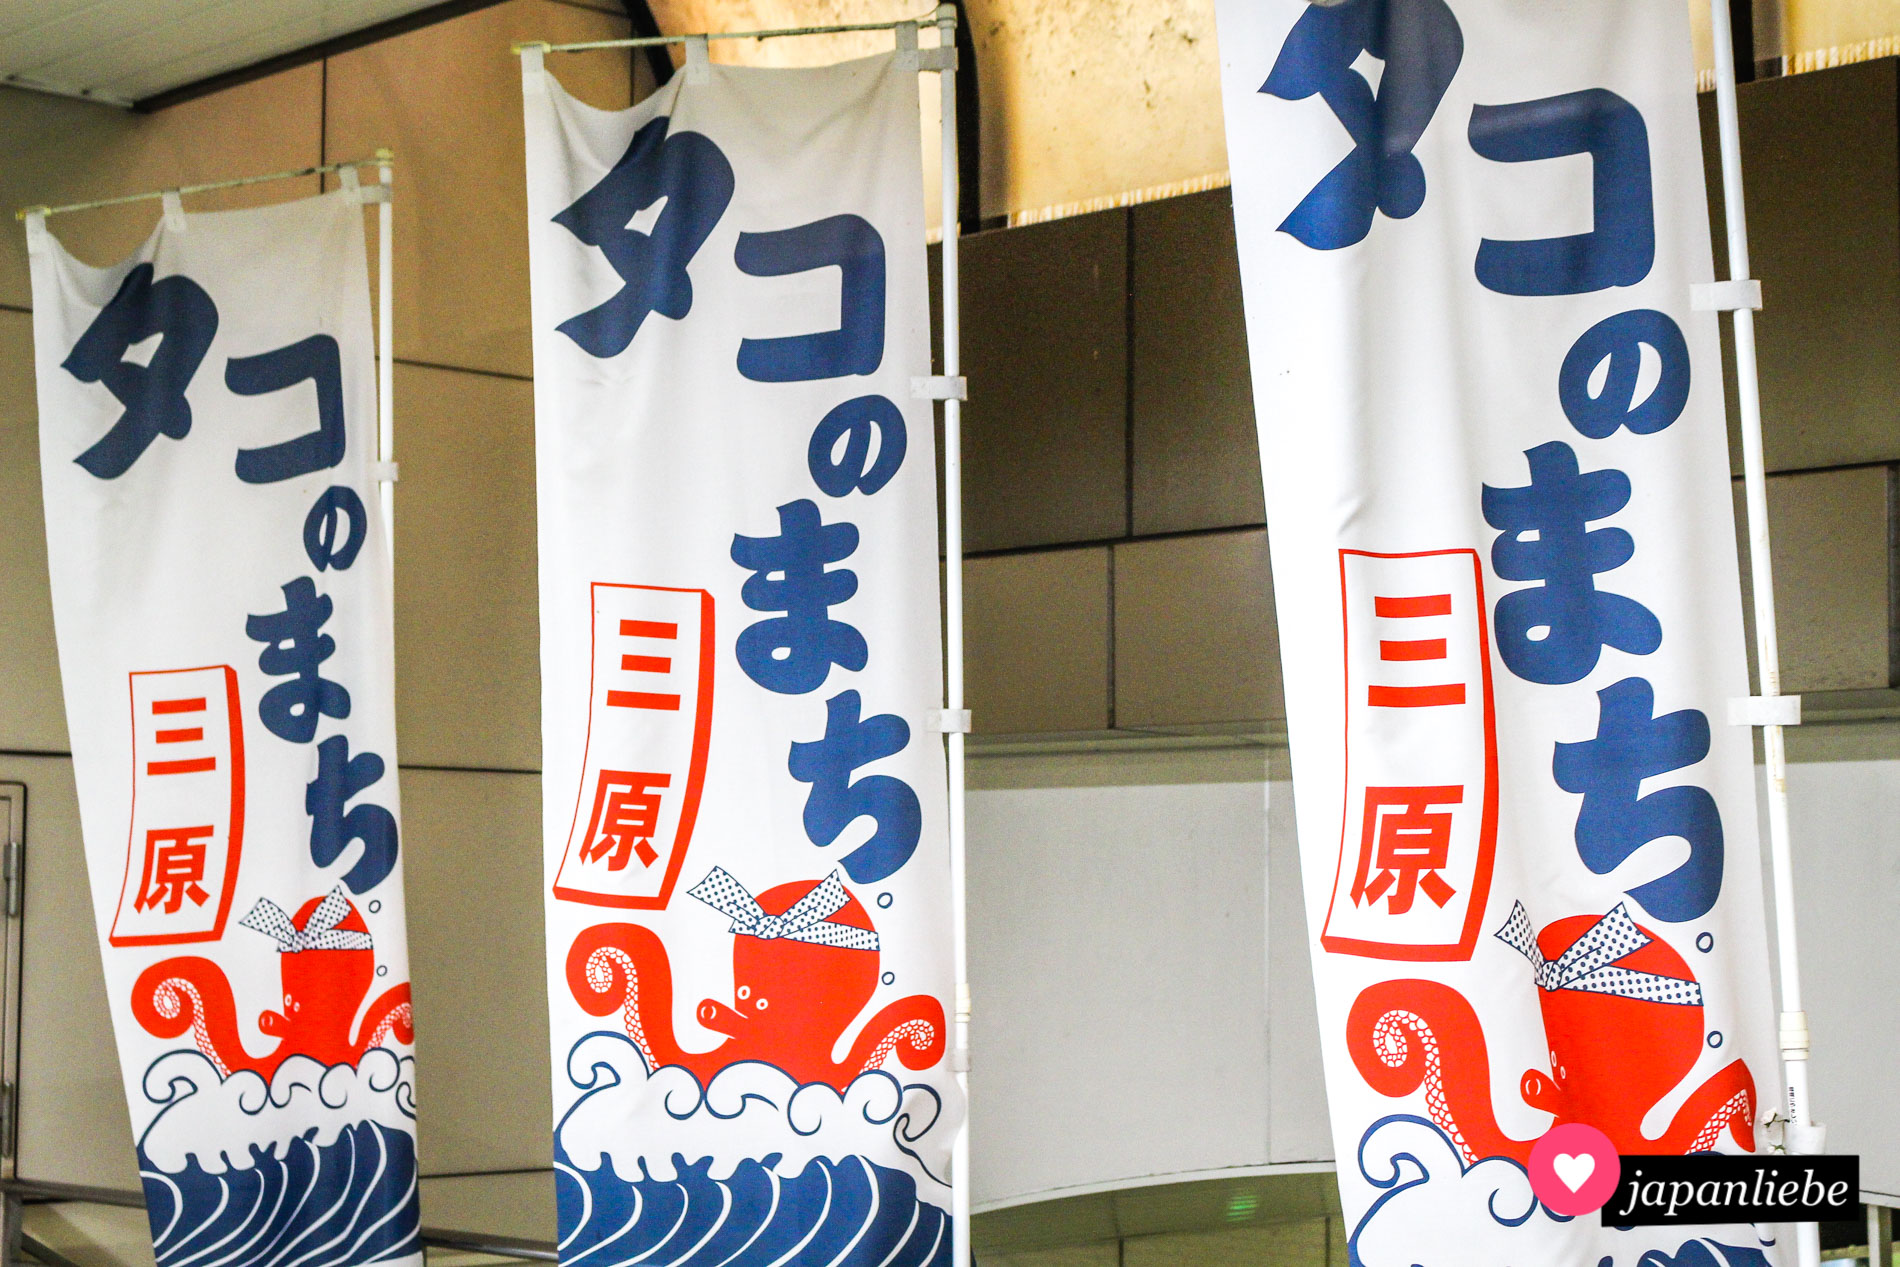 Mihara in der Präfektur Hiroshima ist als Kraken-Stadt bekannt. Diese Flaggen besagen genau dies. Die dargestellten Oktopoden tragen Stirnbänder im japanischen Stil.